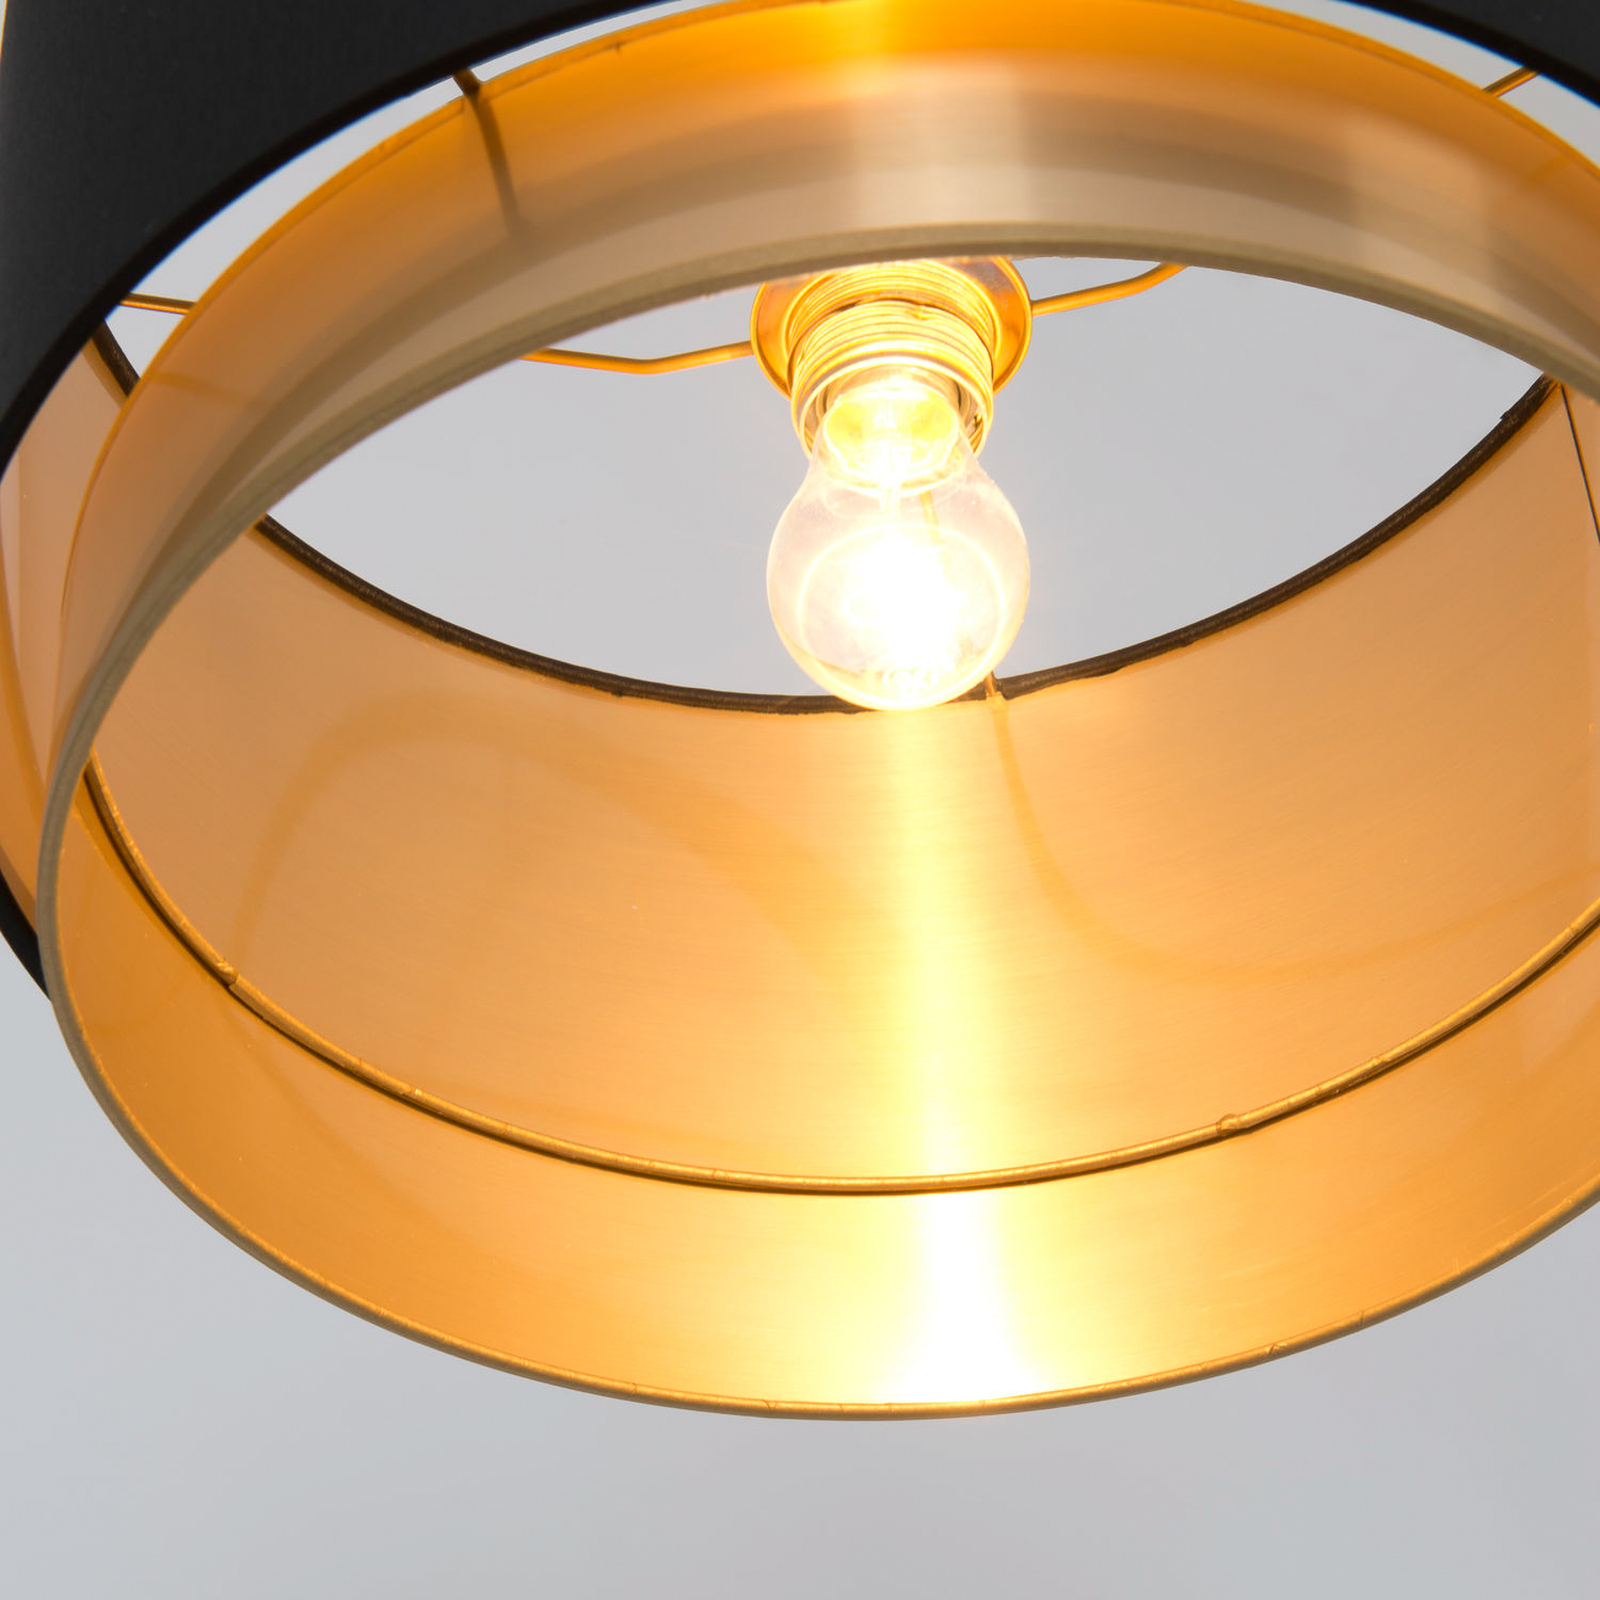 Stojací lampa Meteor, zlatá barva, výška 169 cm, železo